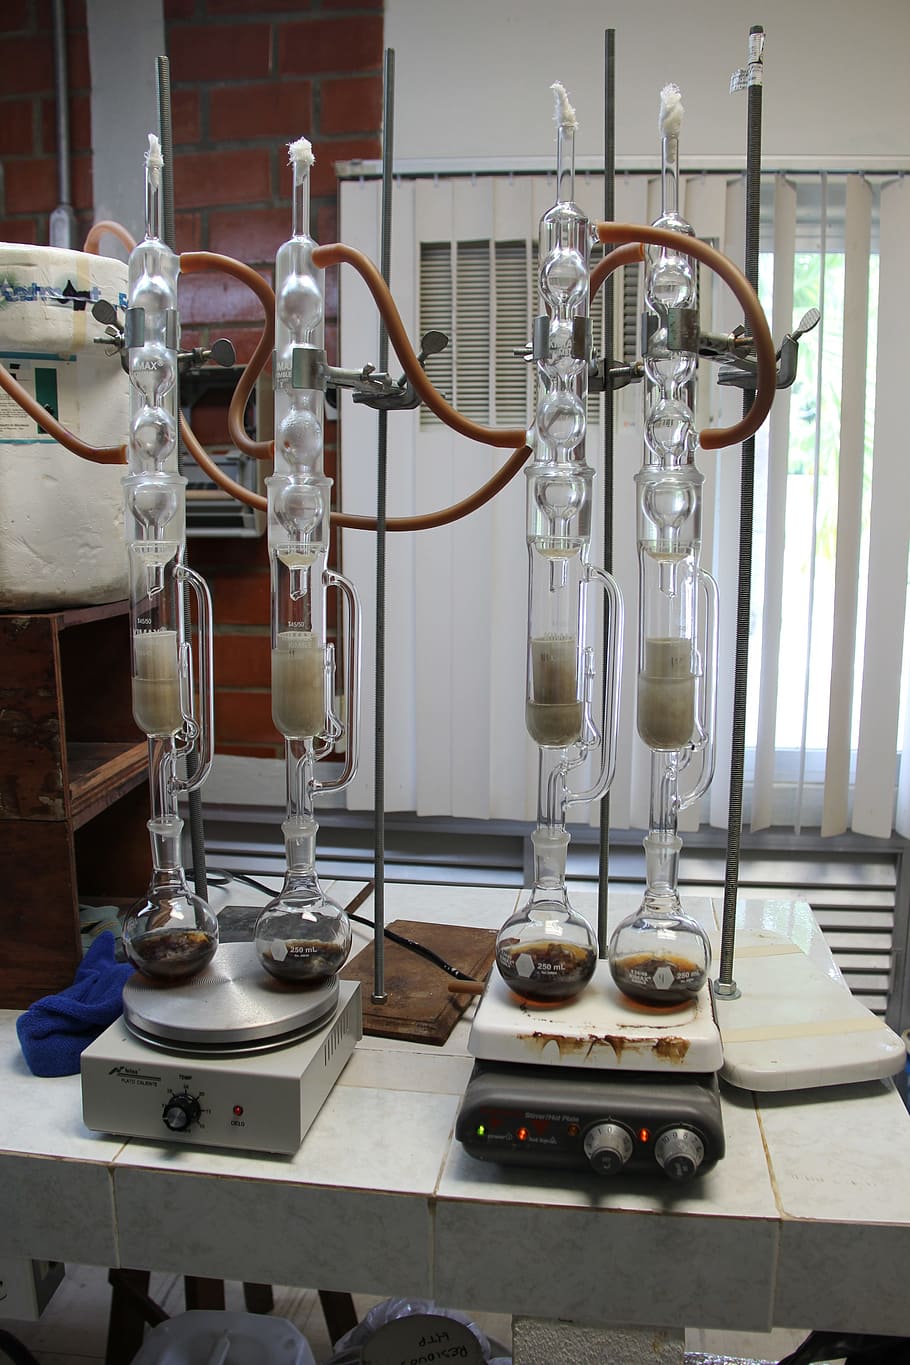 cuatro, claro, equipos de laboratorio de vidrio, laboratorio, experimento, ciencia, química, análisis, investigación, medicina